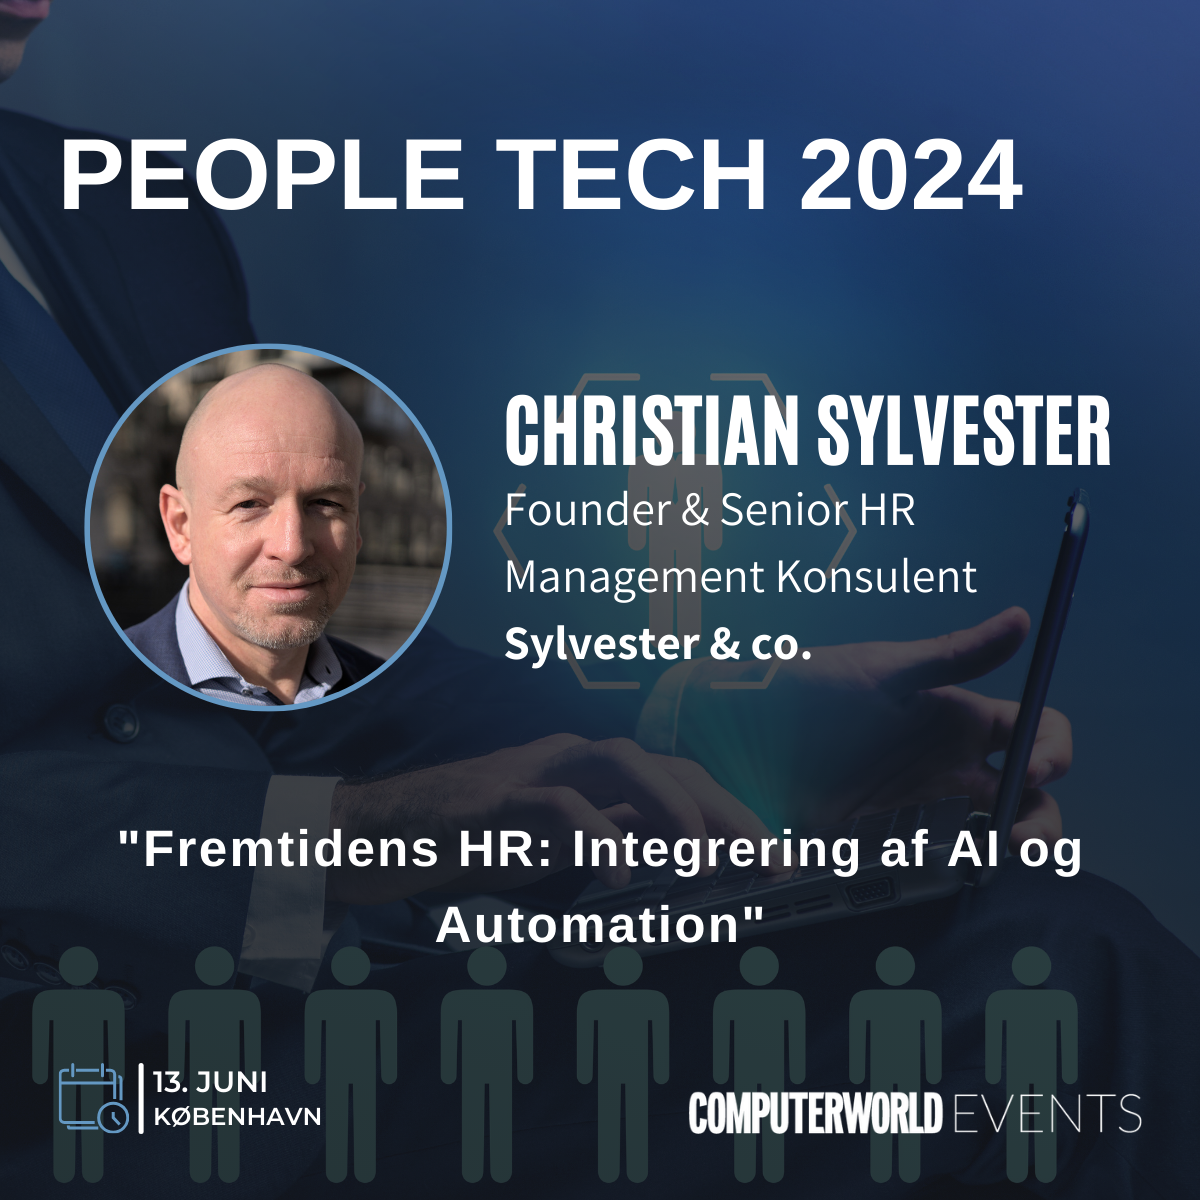 Kom med Sylvester & co til People Tech 2024